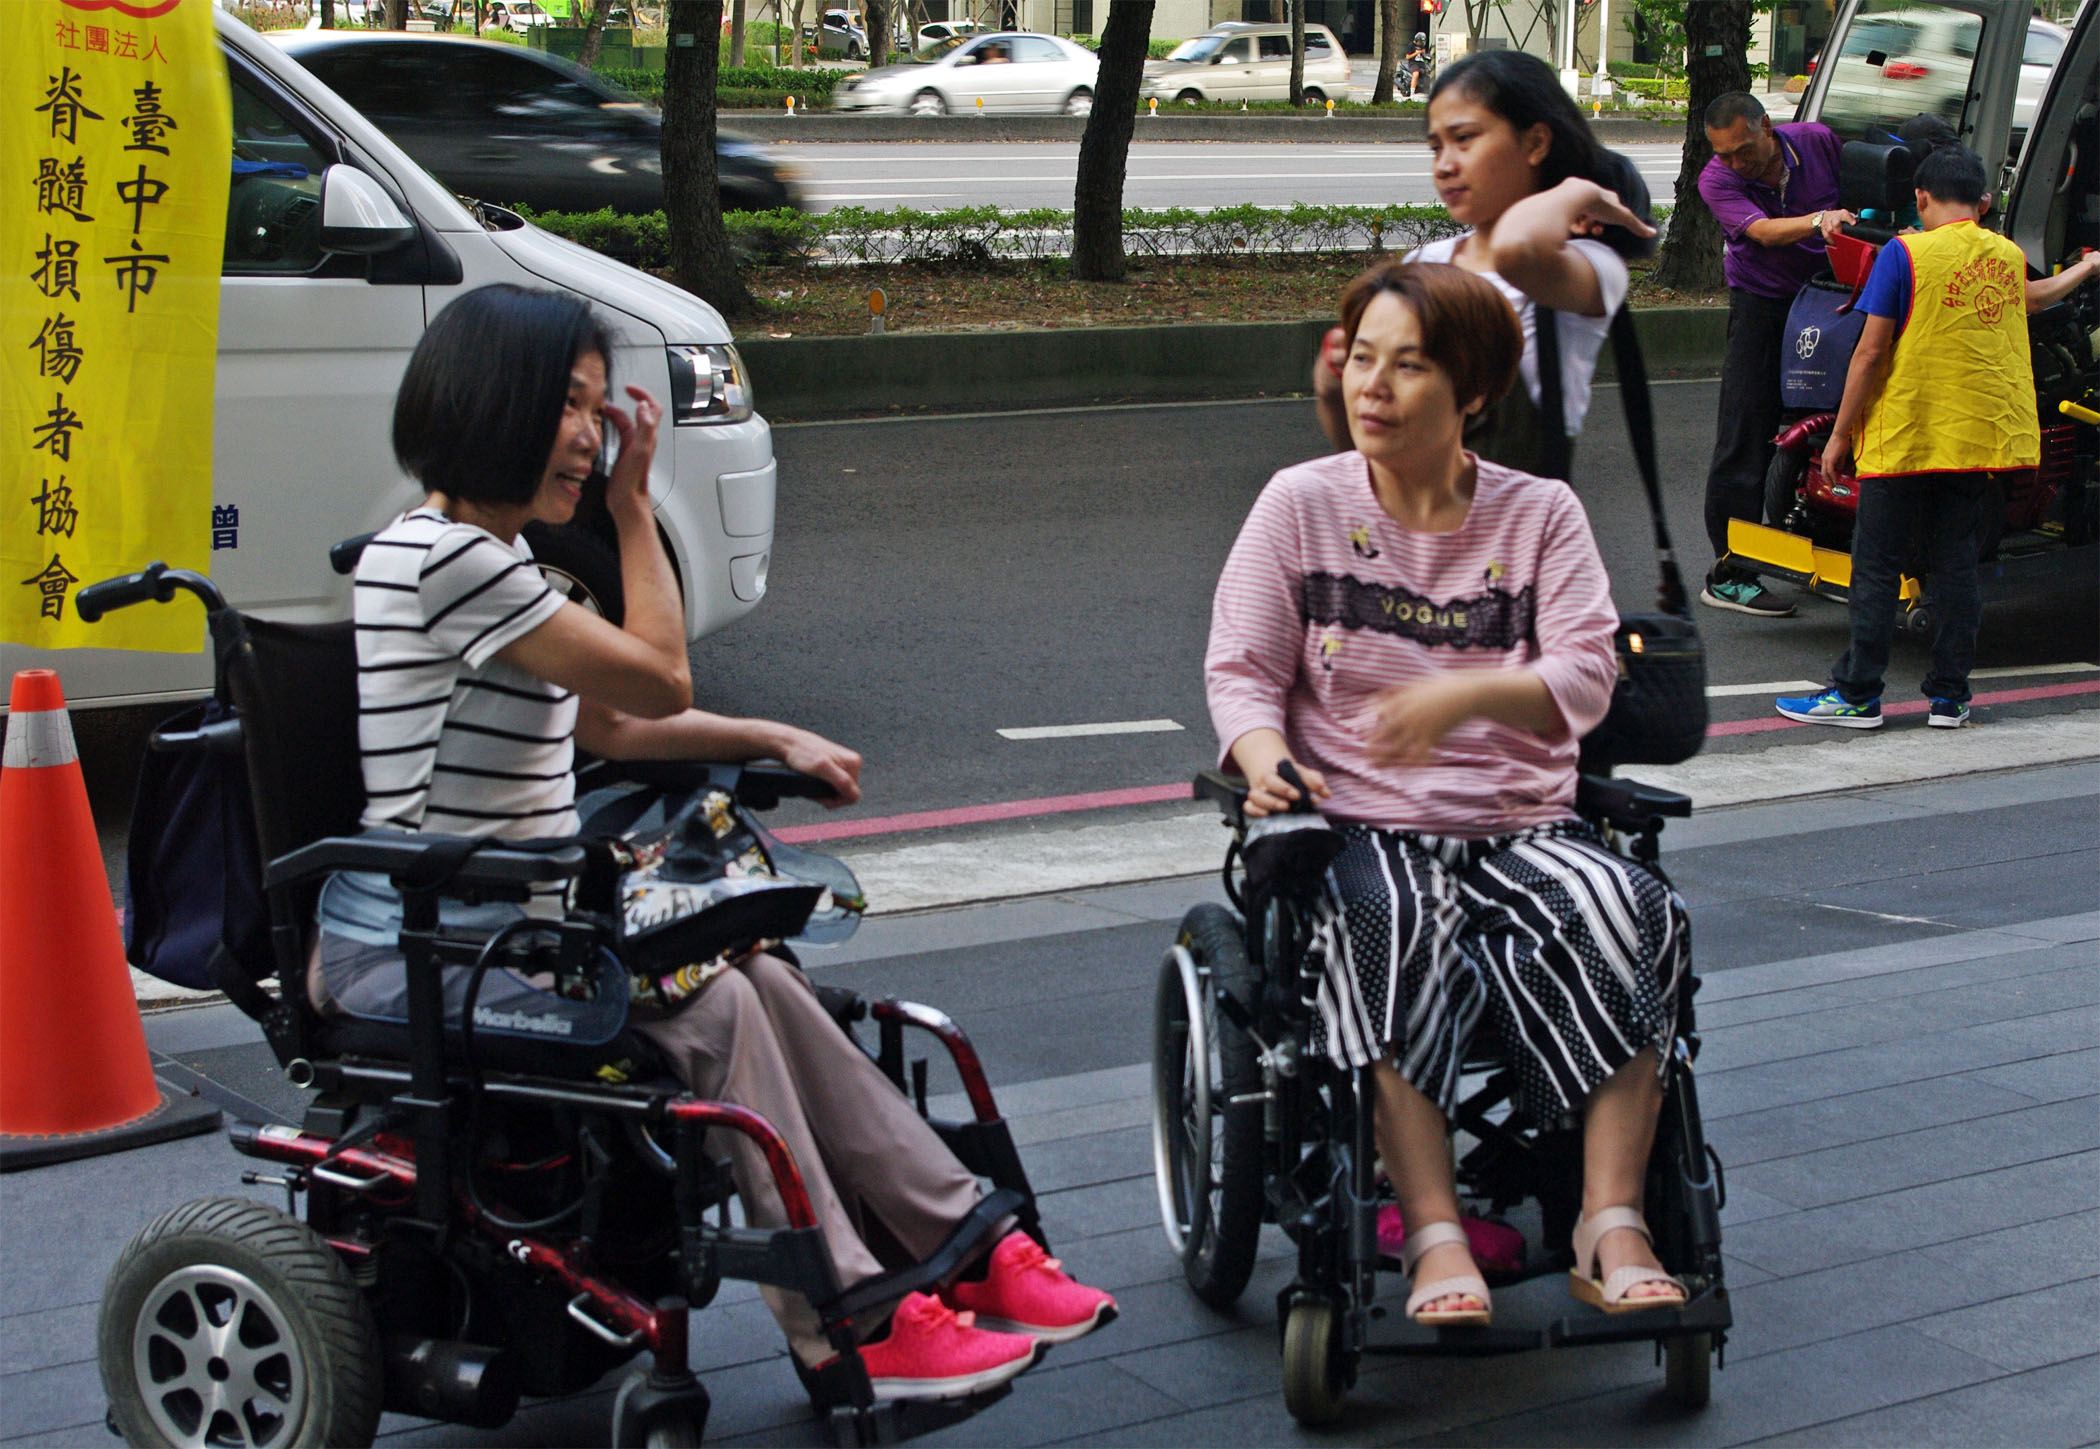 作者與其他傷友一起參與協會活動，二者皆坐在輪椅上於馬路邊稍做等待。